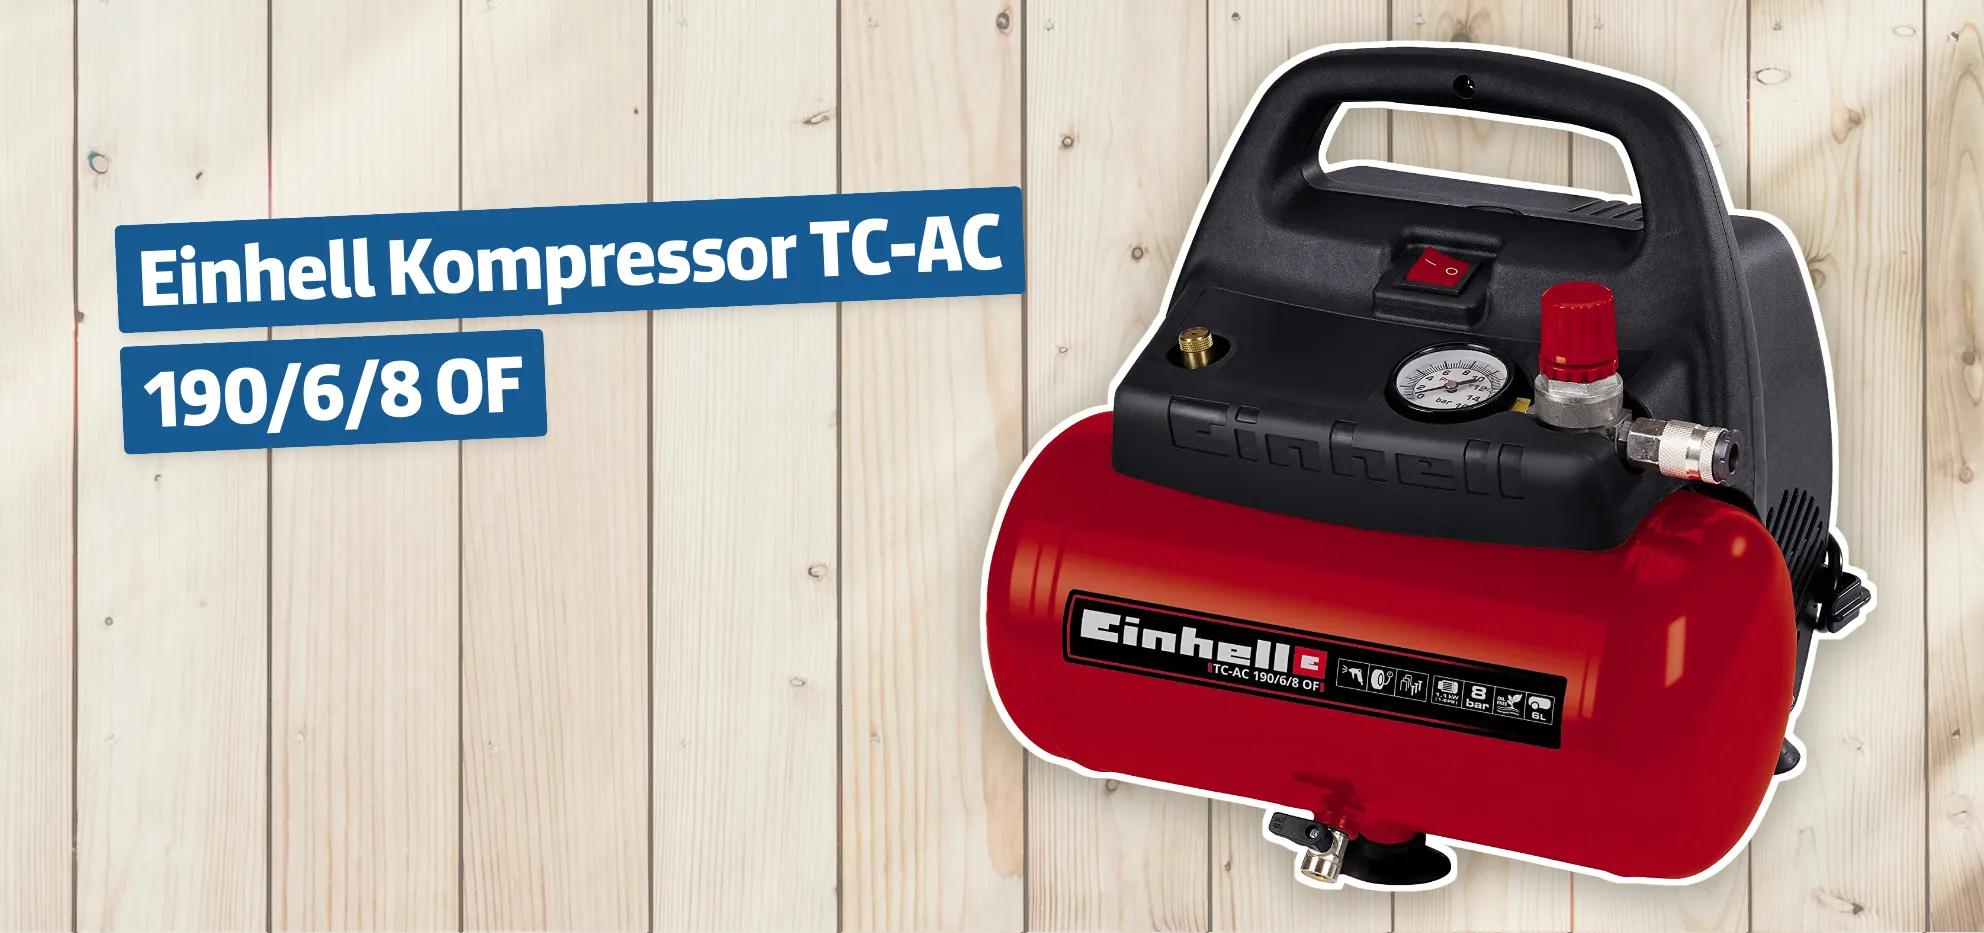 Einhell Kompressor TC-AC 190/6/8 OF